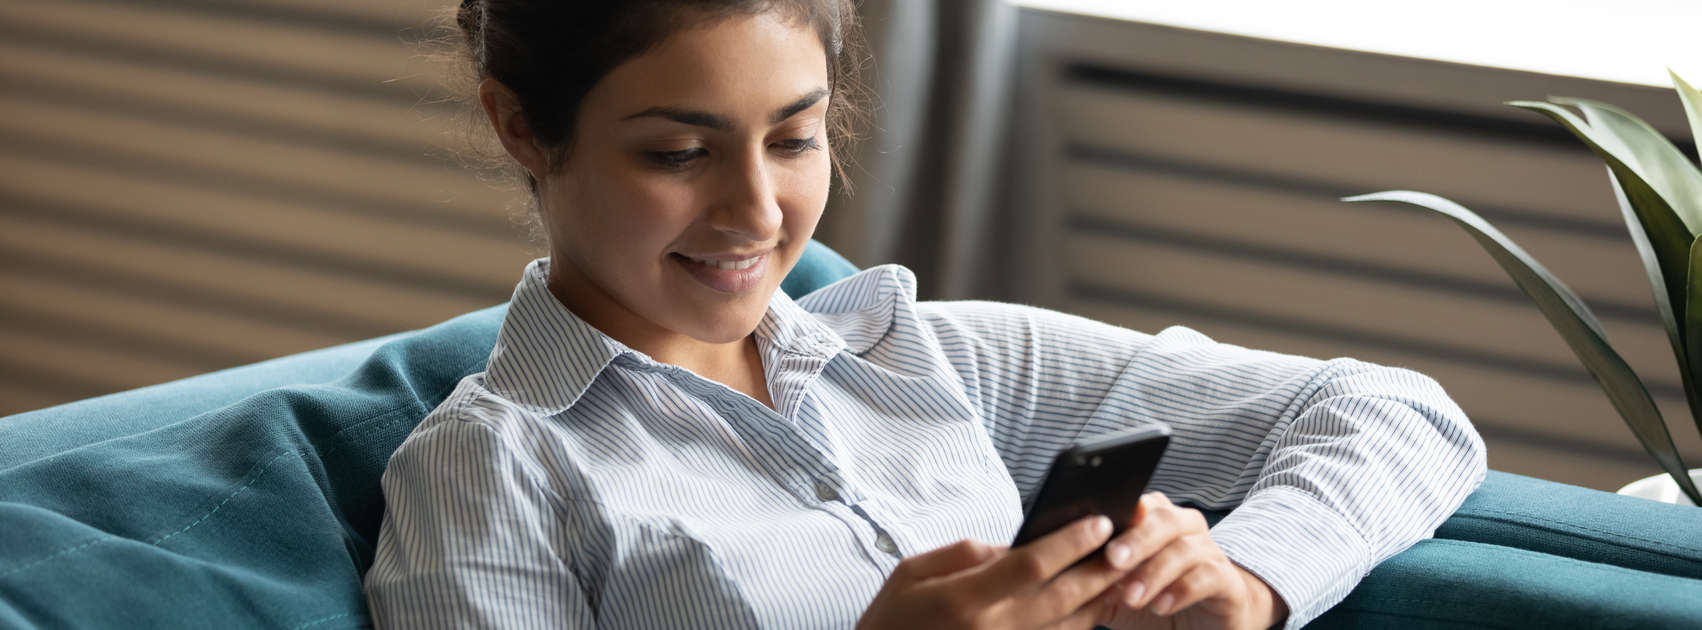 une jeune femme a l'air de sourire sur son smartphone